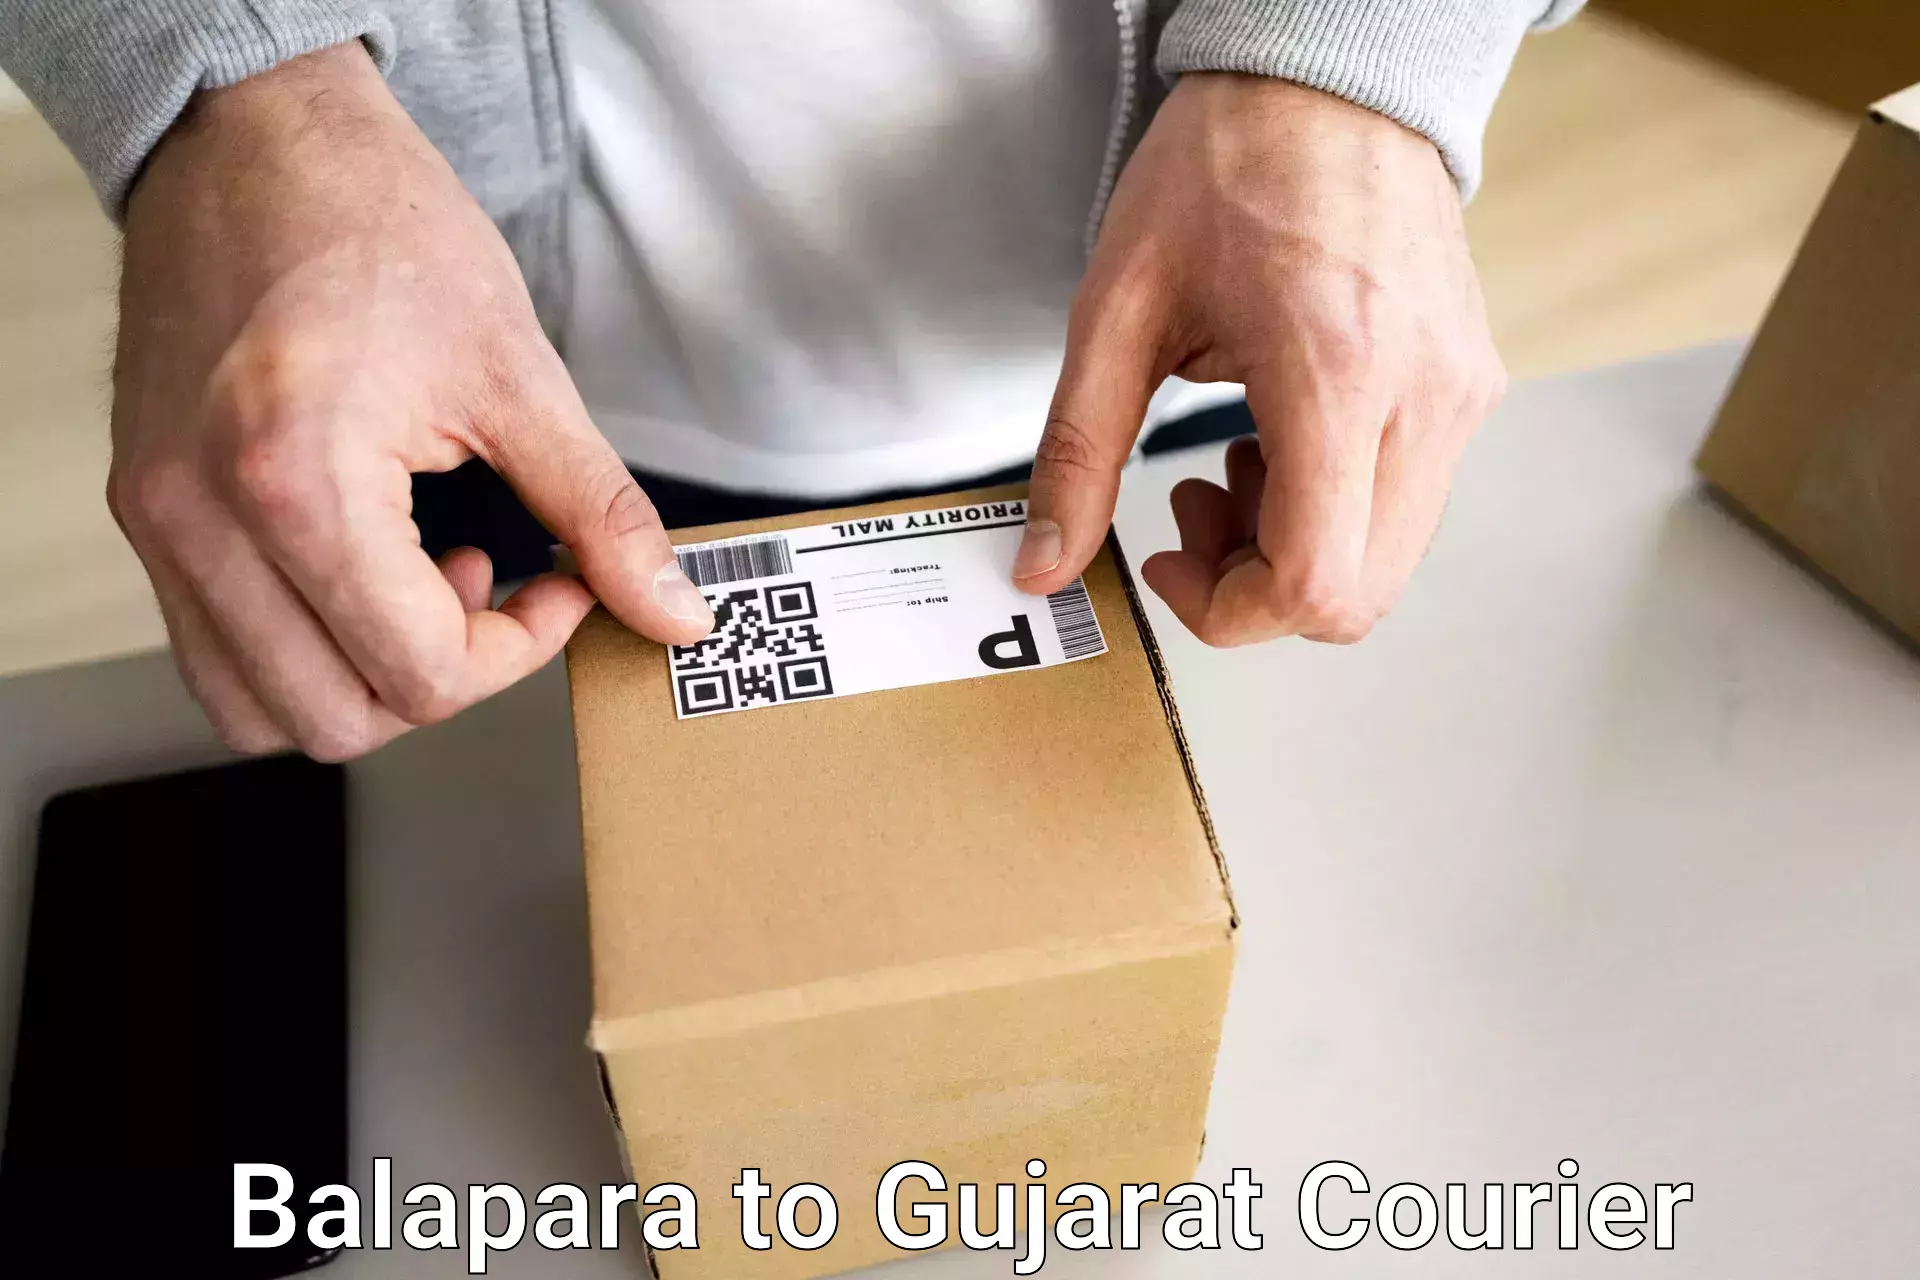 Luggage shipping service Balapara to Gujarat